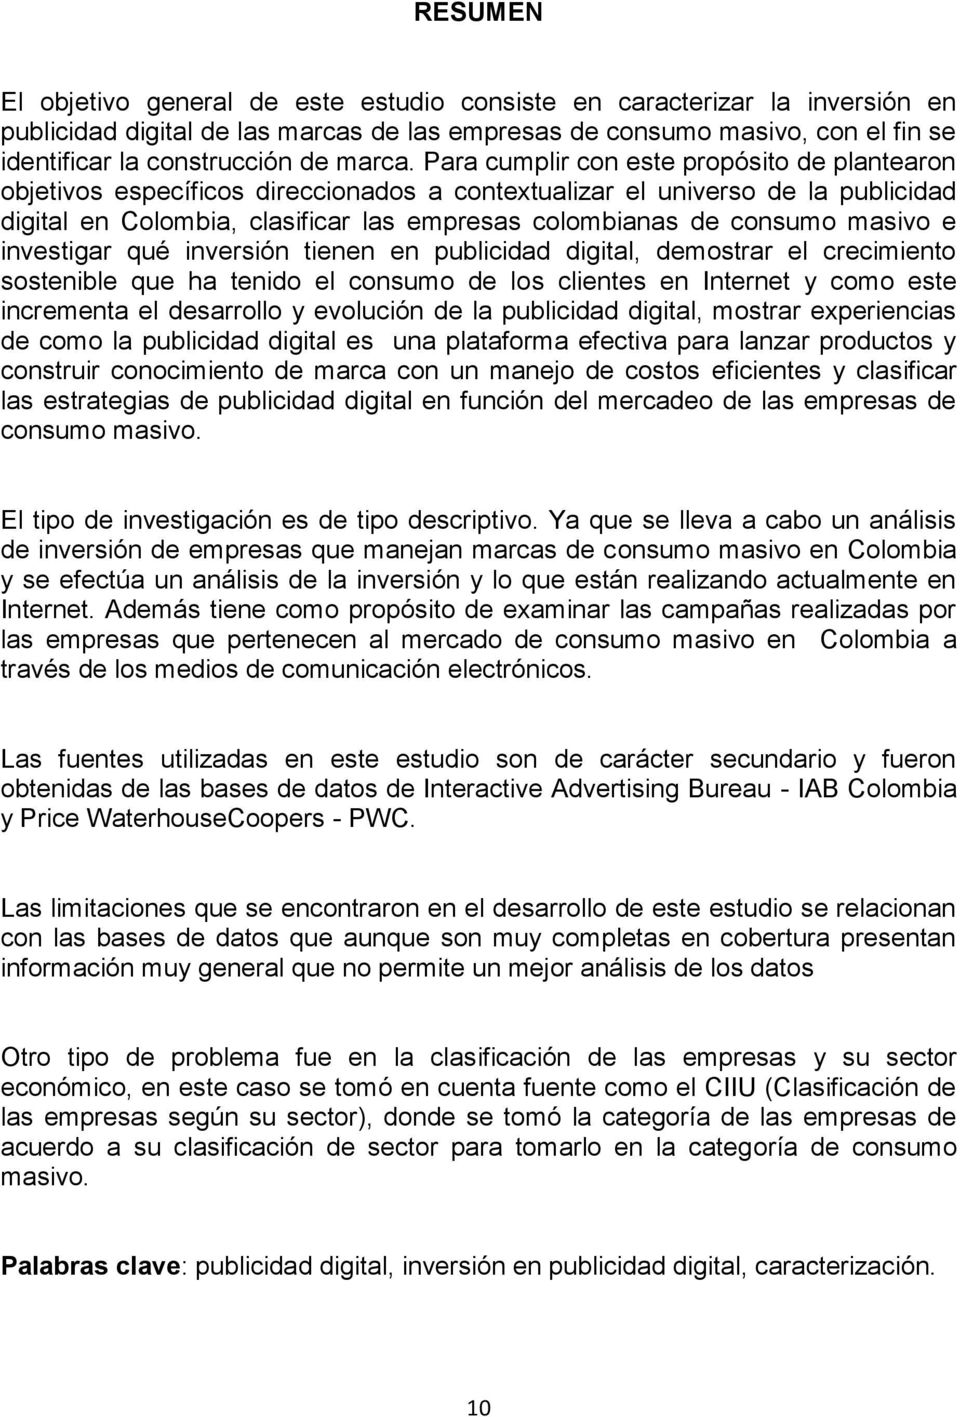 Para cumplir con este propósito de plantearon objetivos específicos direccionados a contextualizar el universo de la publicidad digital en Colombia, clasificar las empresas colombianas de consumo